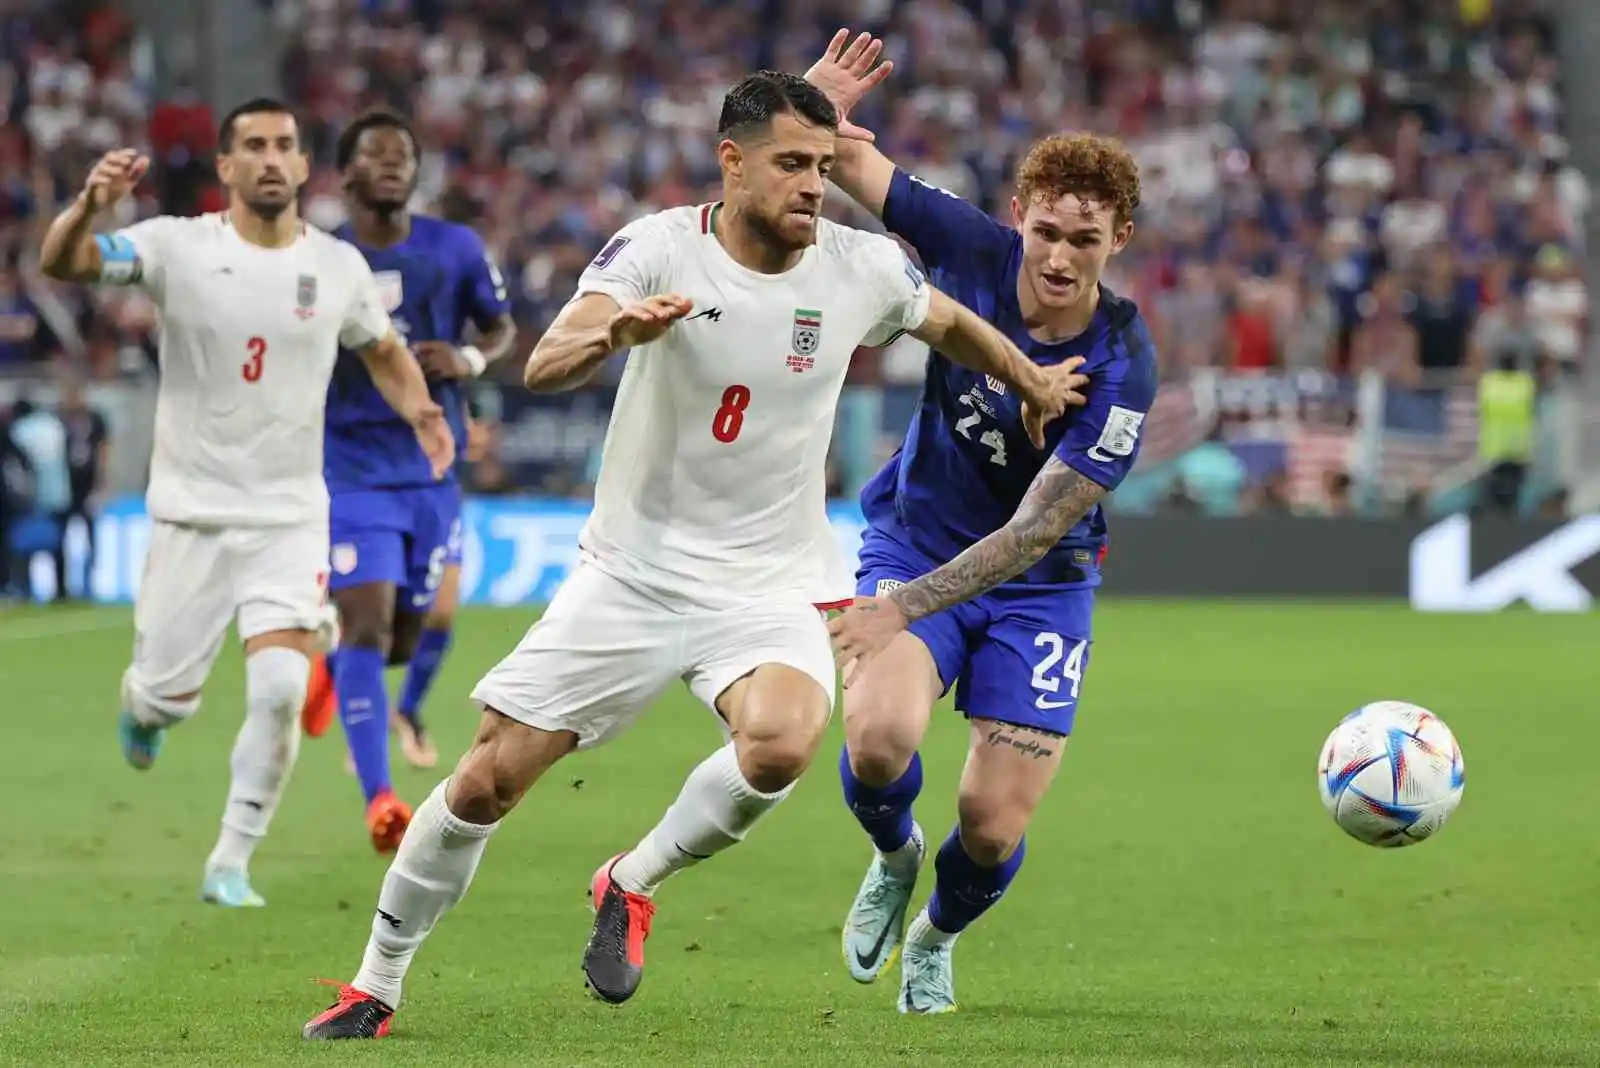 İngiltere ve ABD, Dünya Kupası’nda son 16’ya kaldı
